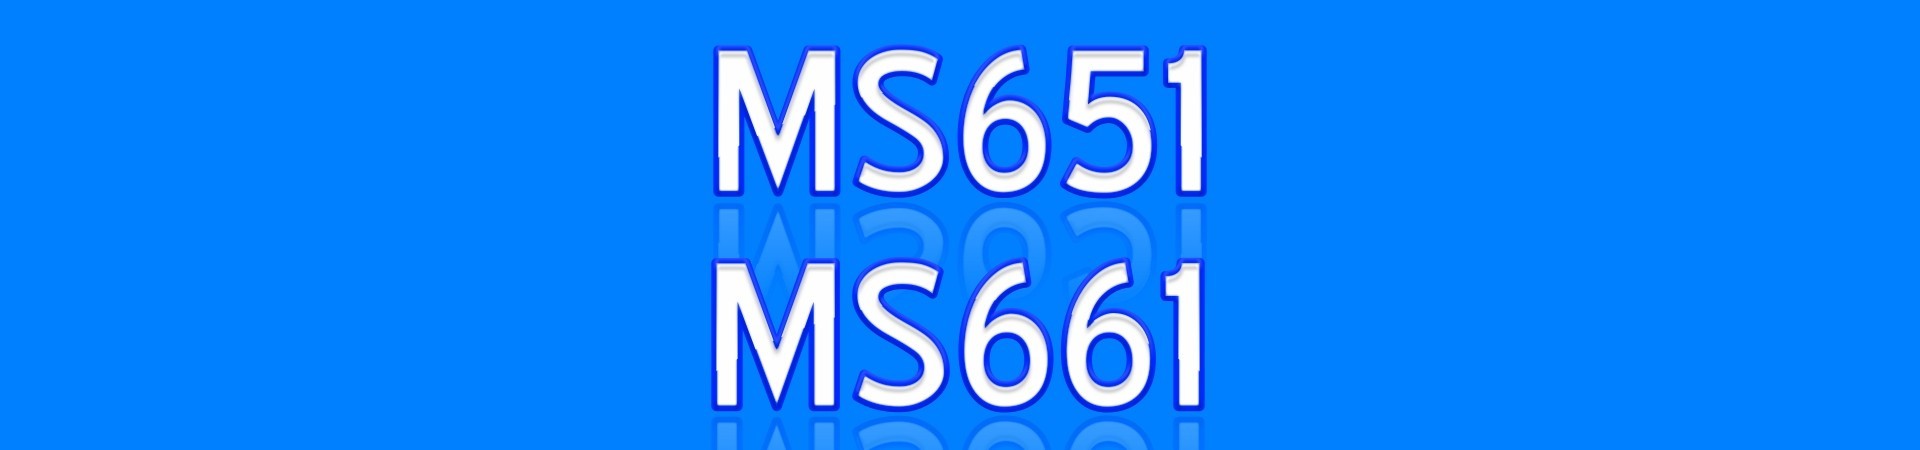 MS651 MS661